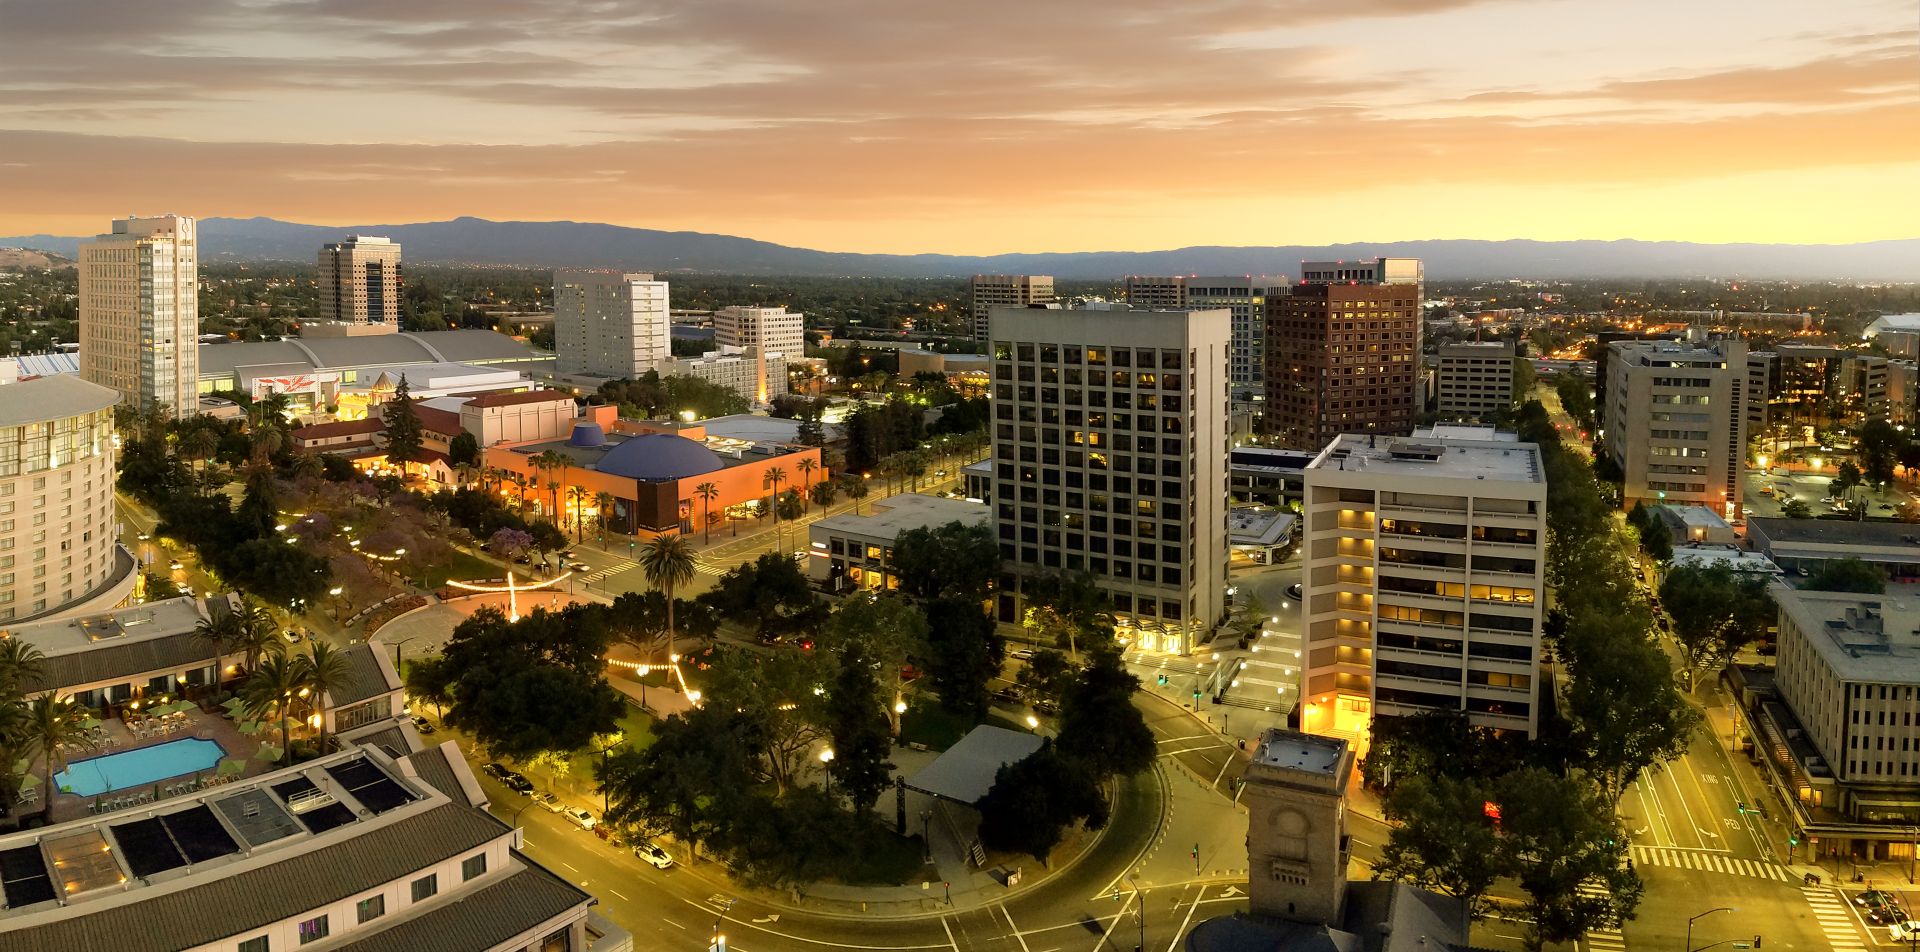 Сан-Хосе считается столицей Силиконовой долины